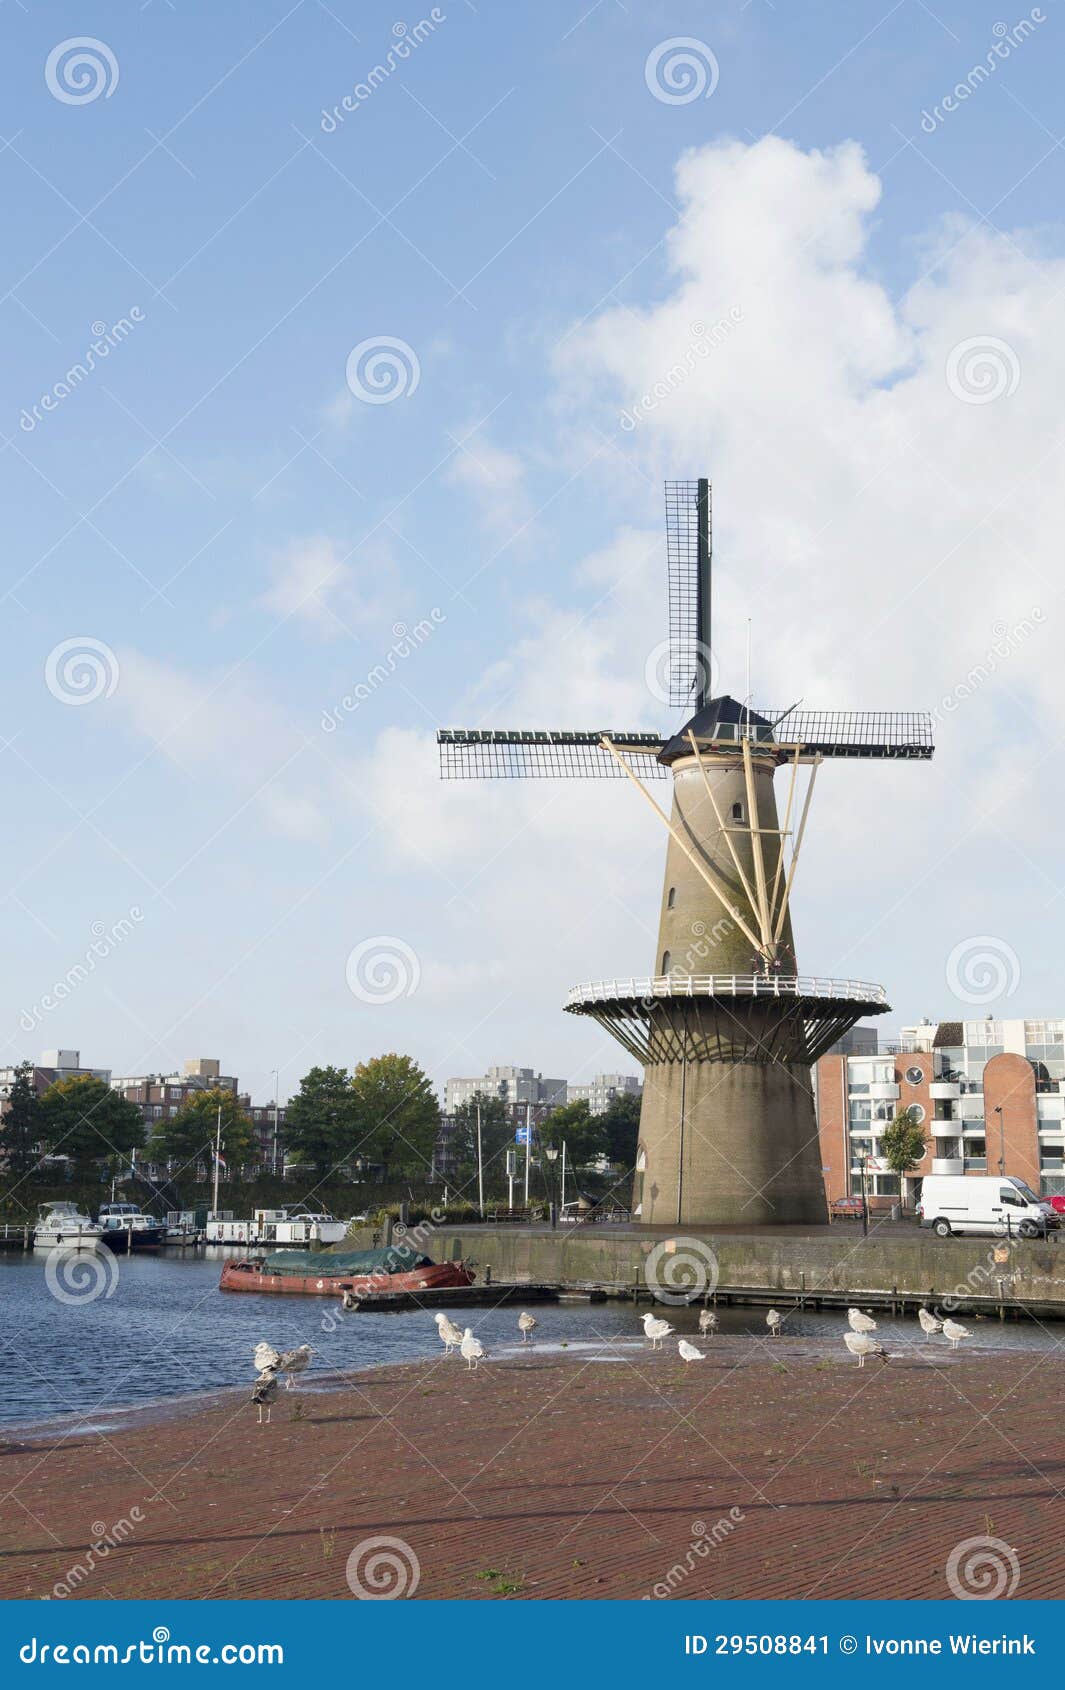 Wildmill Delfshaven. Historic windmill De Distilleerketel at Delfshaven Dutch Rotterdam